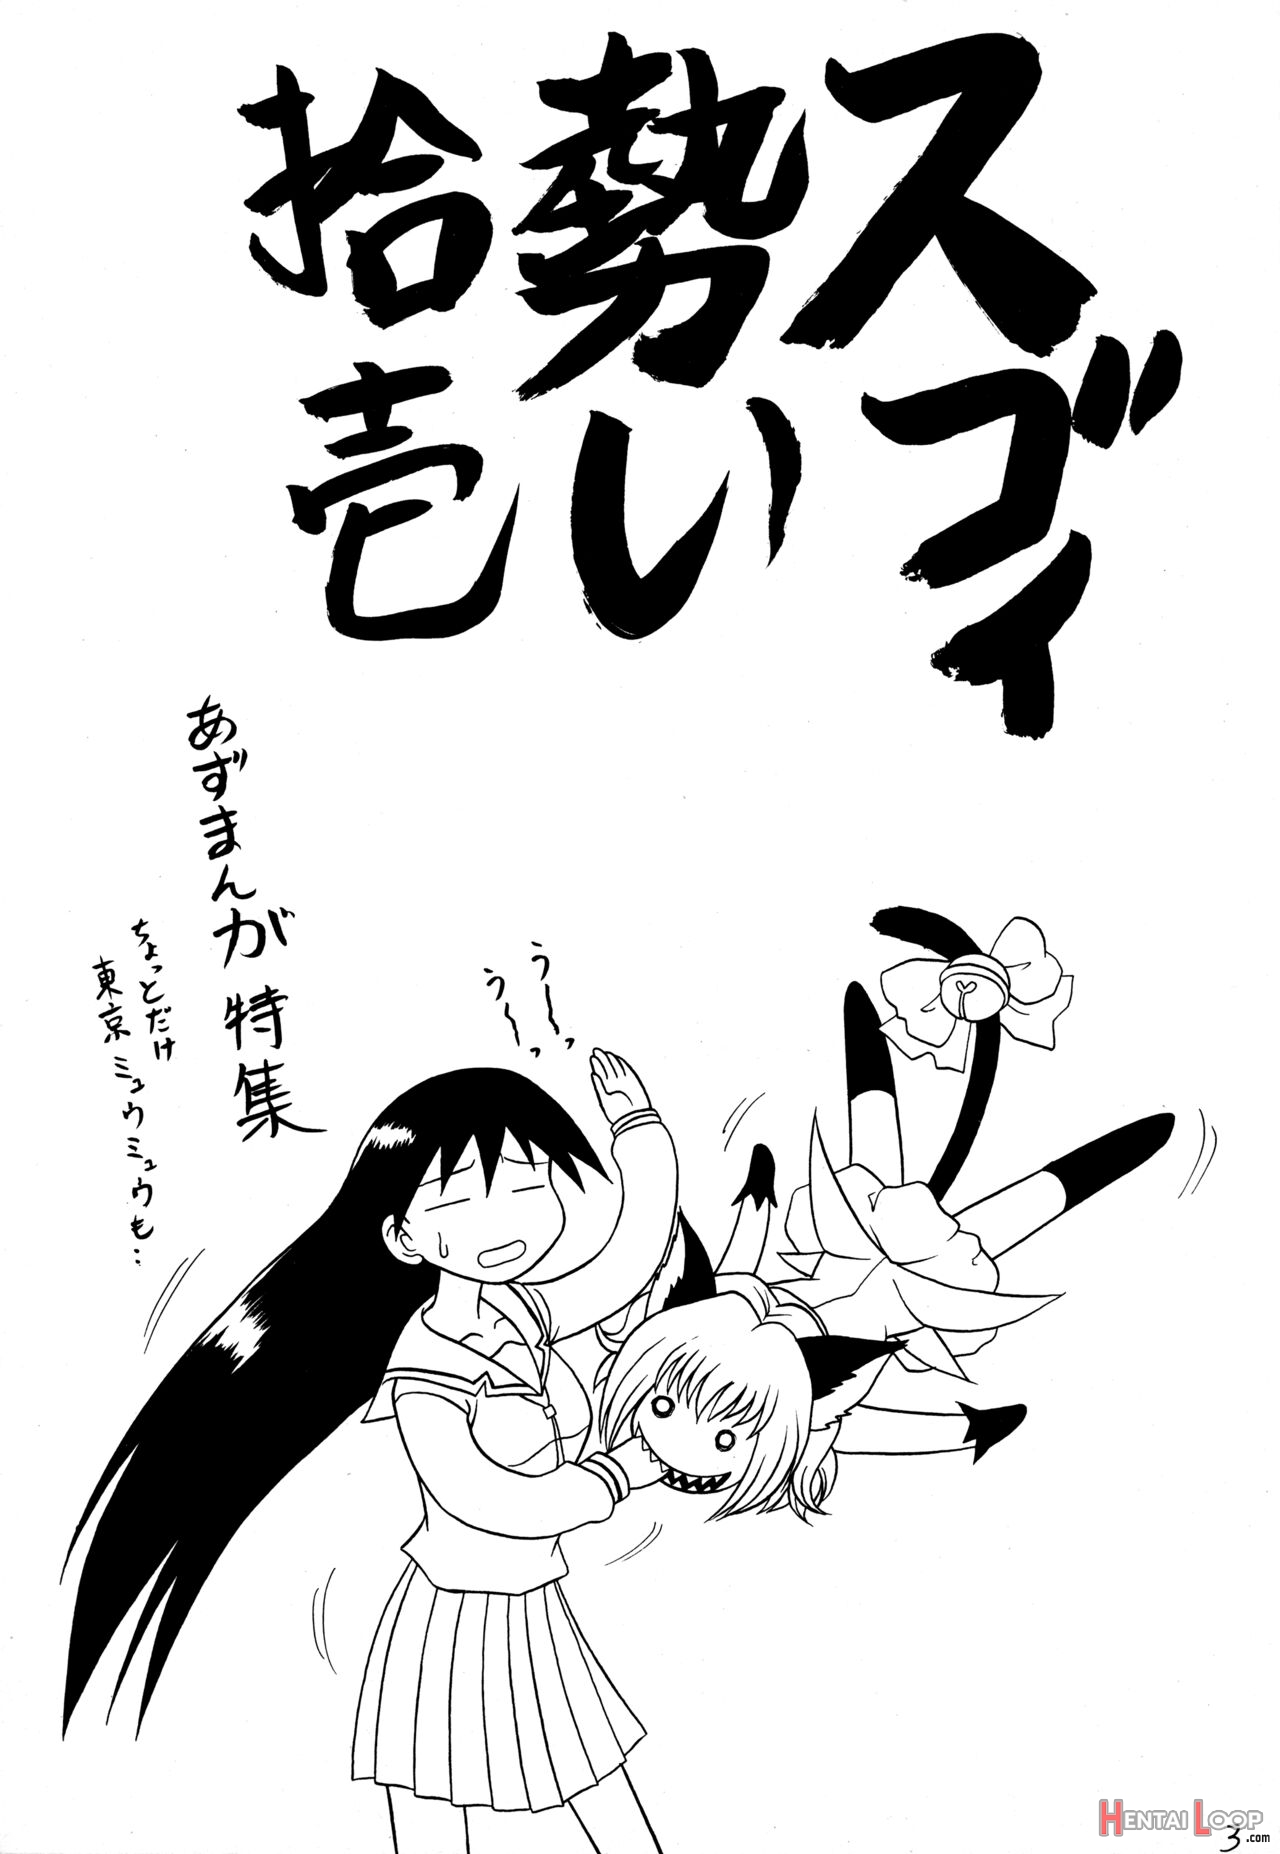 Sugoi Ikioi 11 - Chapter 1 Mutsu Nagare page 2